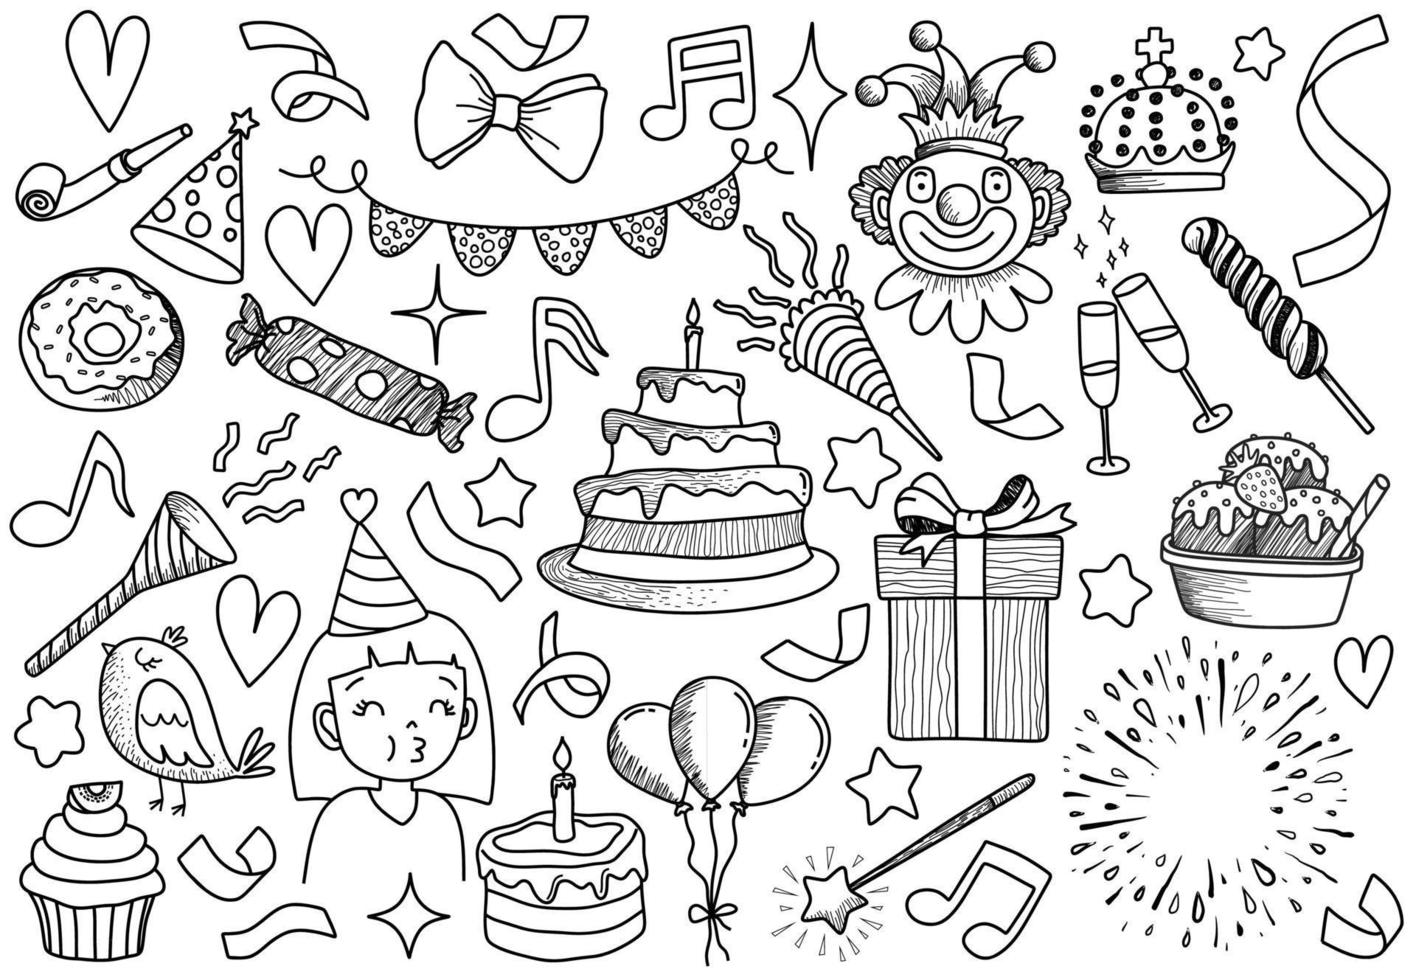 ensemble d'objets et de symboles de dessin animé de doodle sur la fête d'anniversaire. vecteur